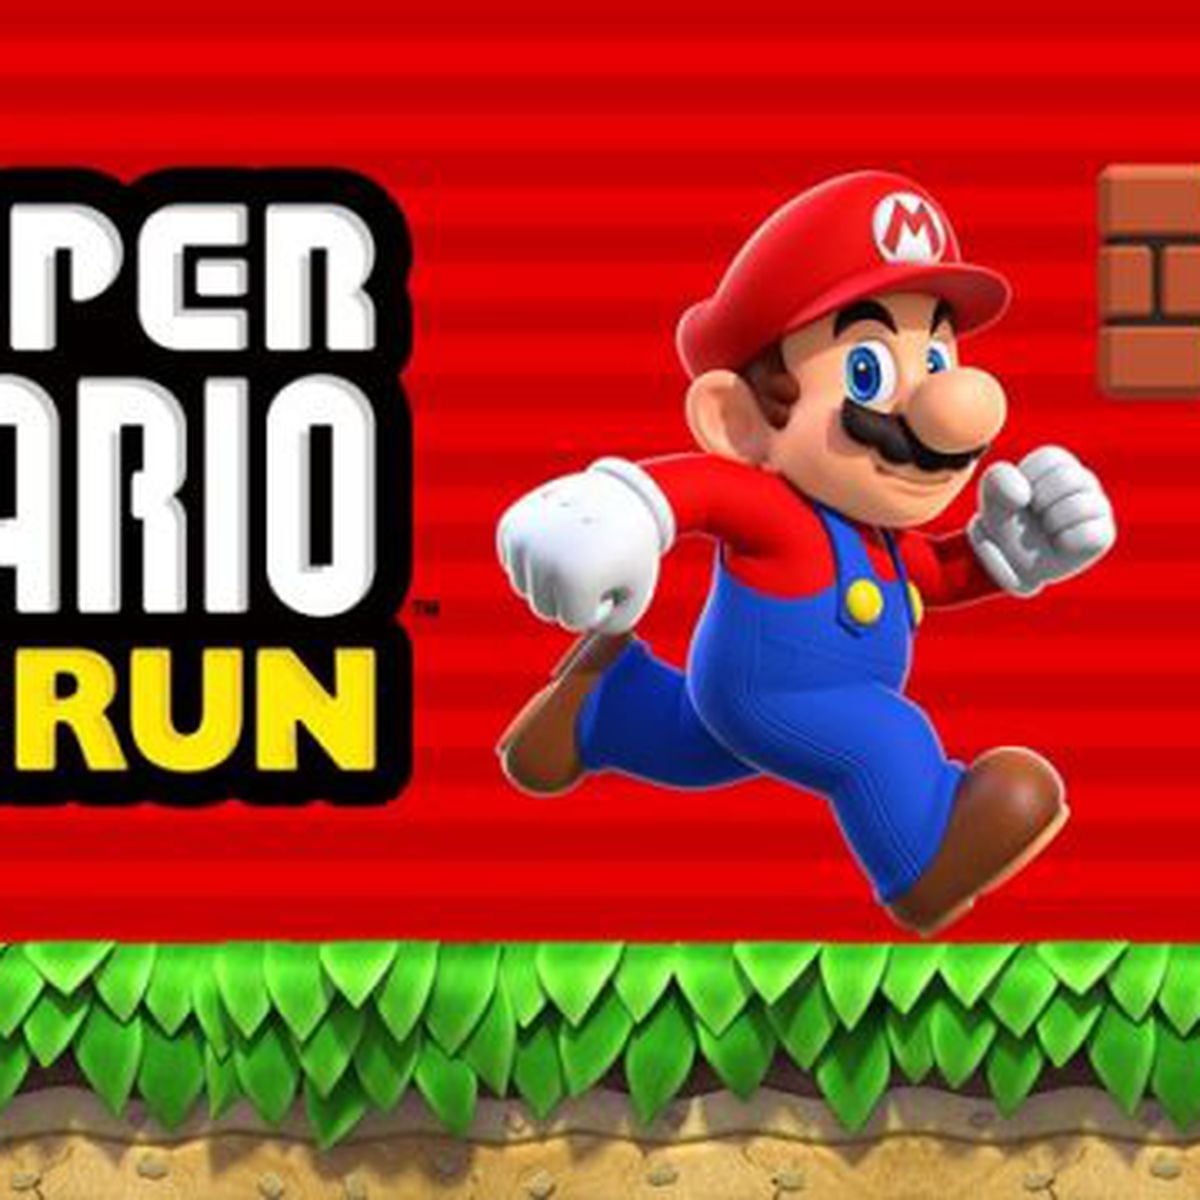 35 anos de Super Mario Bros: A evolução de Mario, de Jumpman a Odyssey